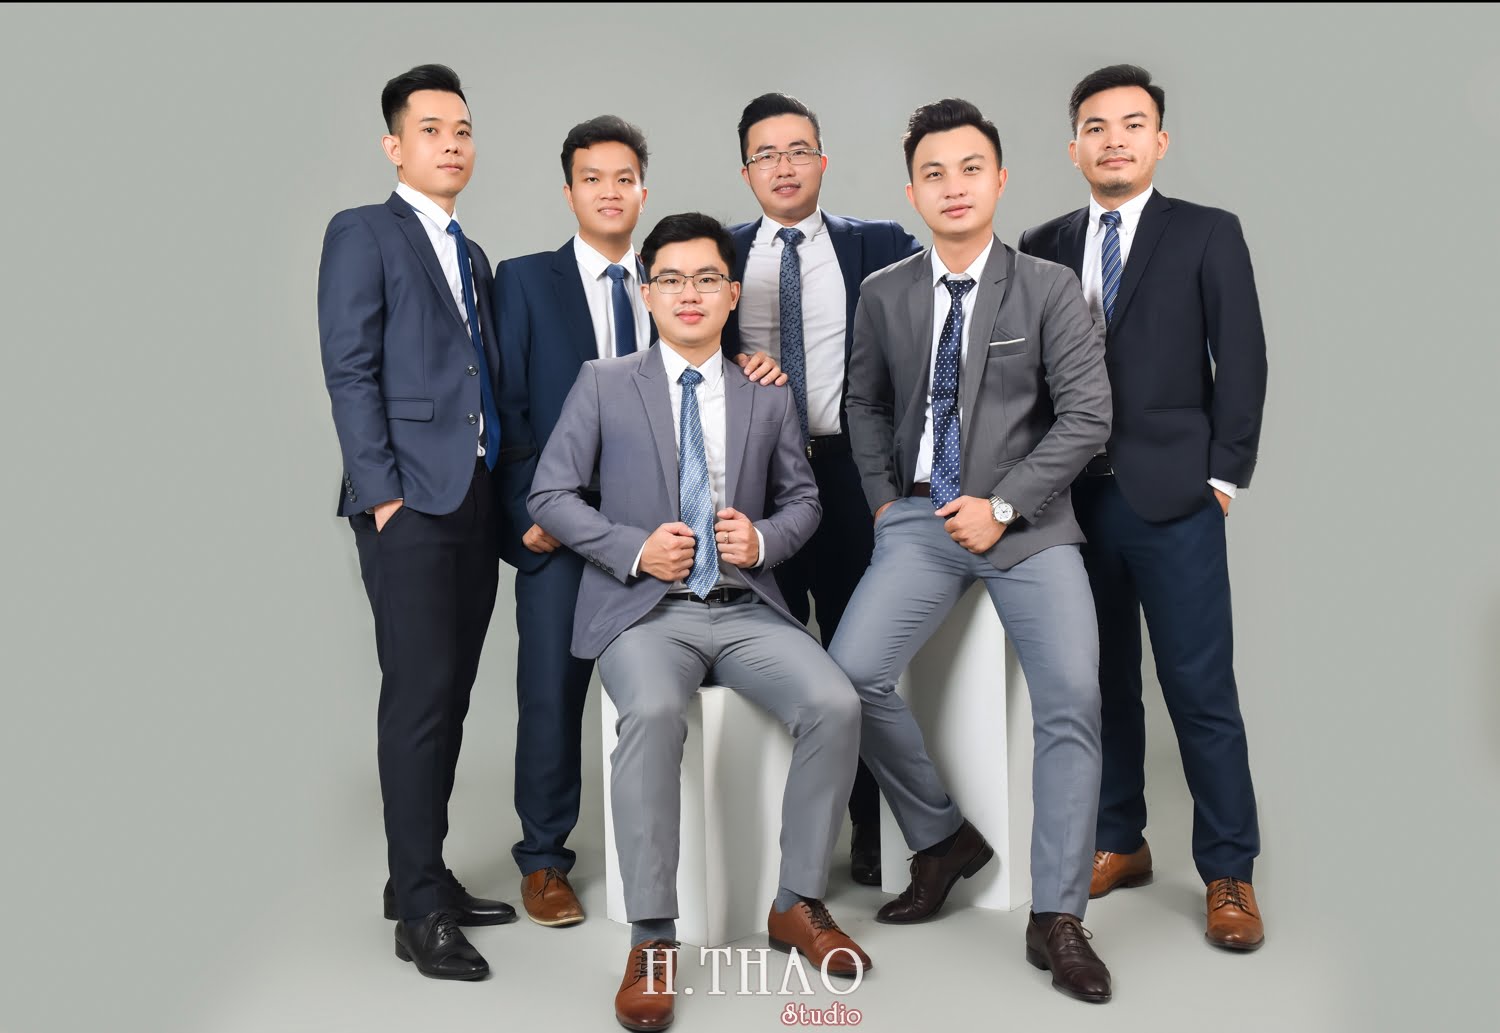 Anh profile cong ty 12 - Chụp ảnh profile cho đội nhóm sale ngân hàng - HThao Studio